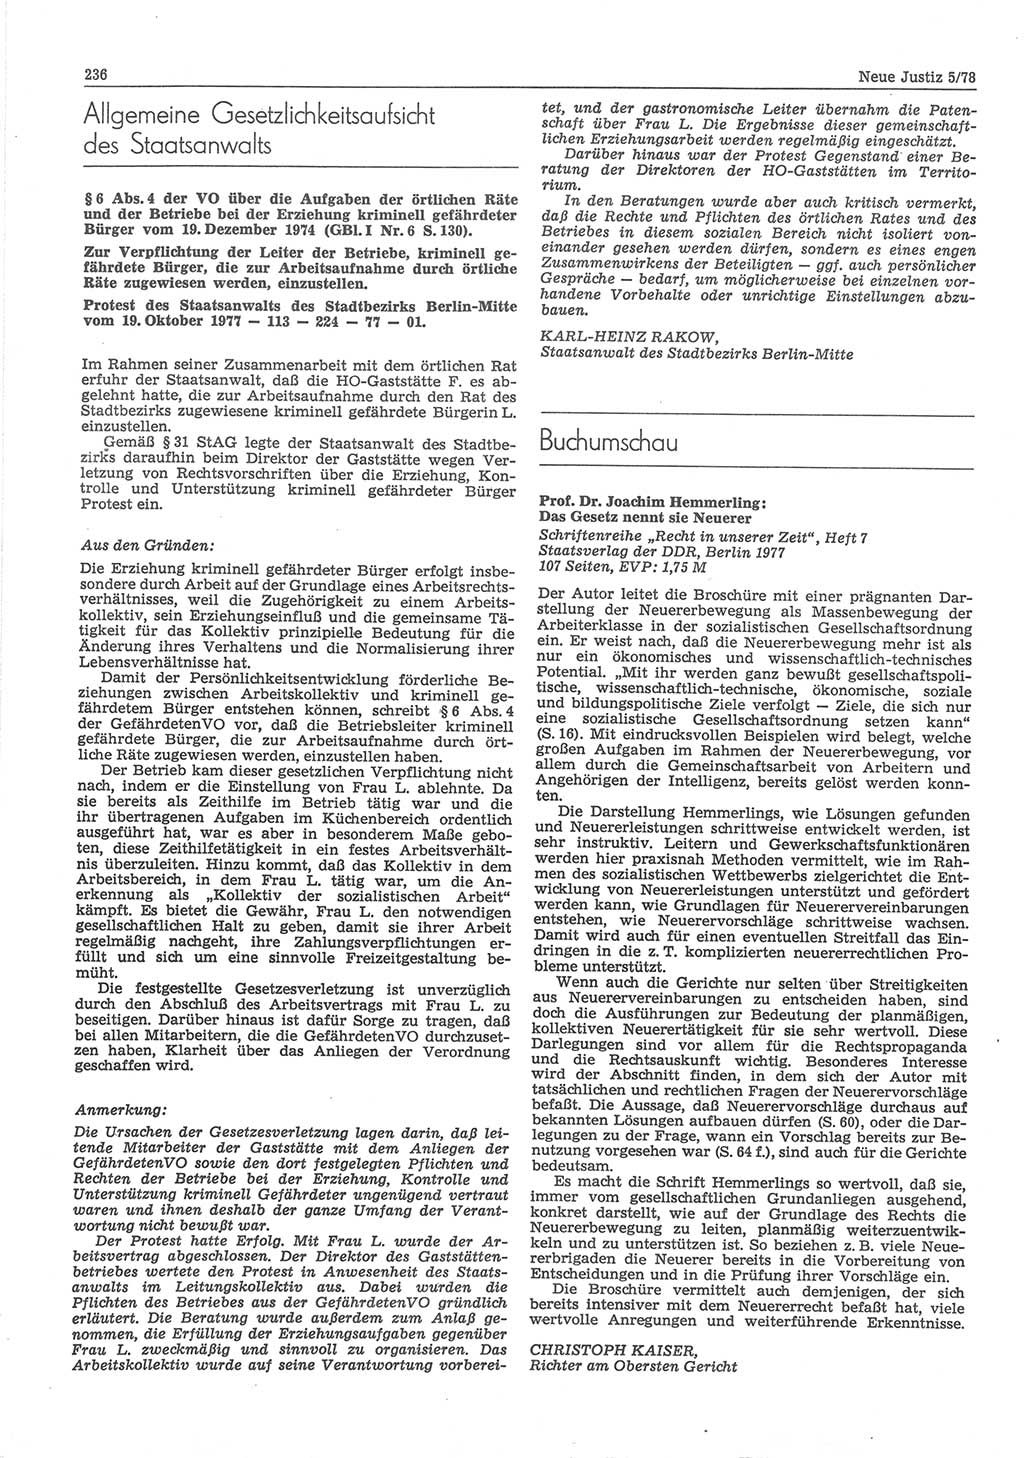 Neue Justiz (NJ), Zeitschrift für sozialistisches Recht und Gesetzlichkeit [Deutsche Demokratische Republik (DDR)], 32. Jahrgang 1978, Seite 236 (NJ DDR 1978, S. 236)